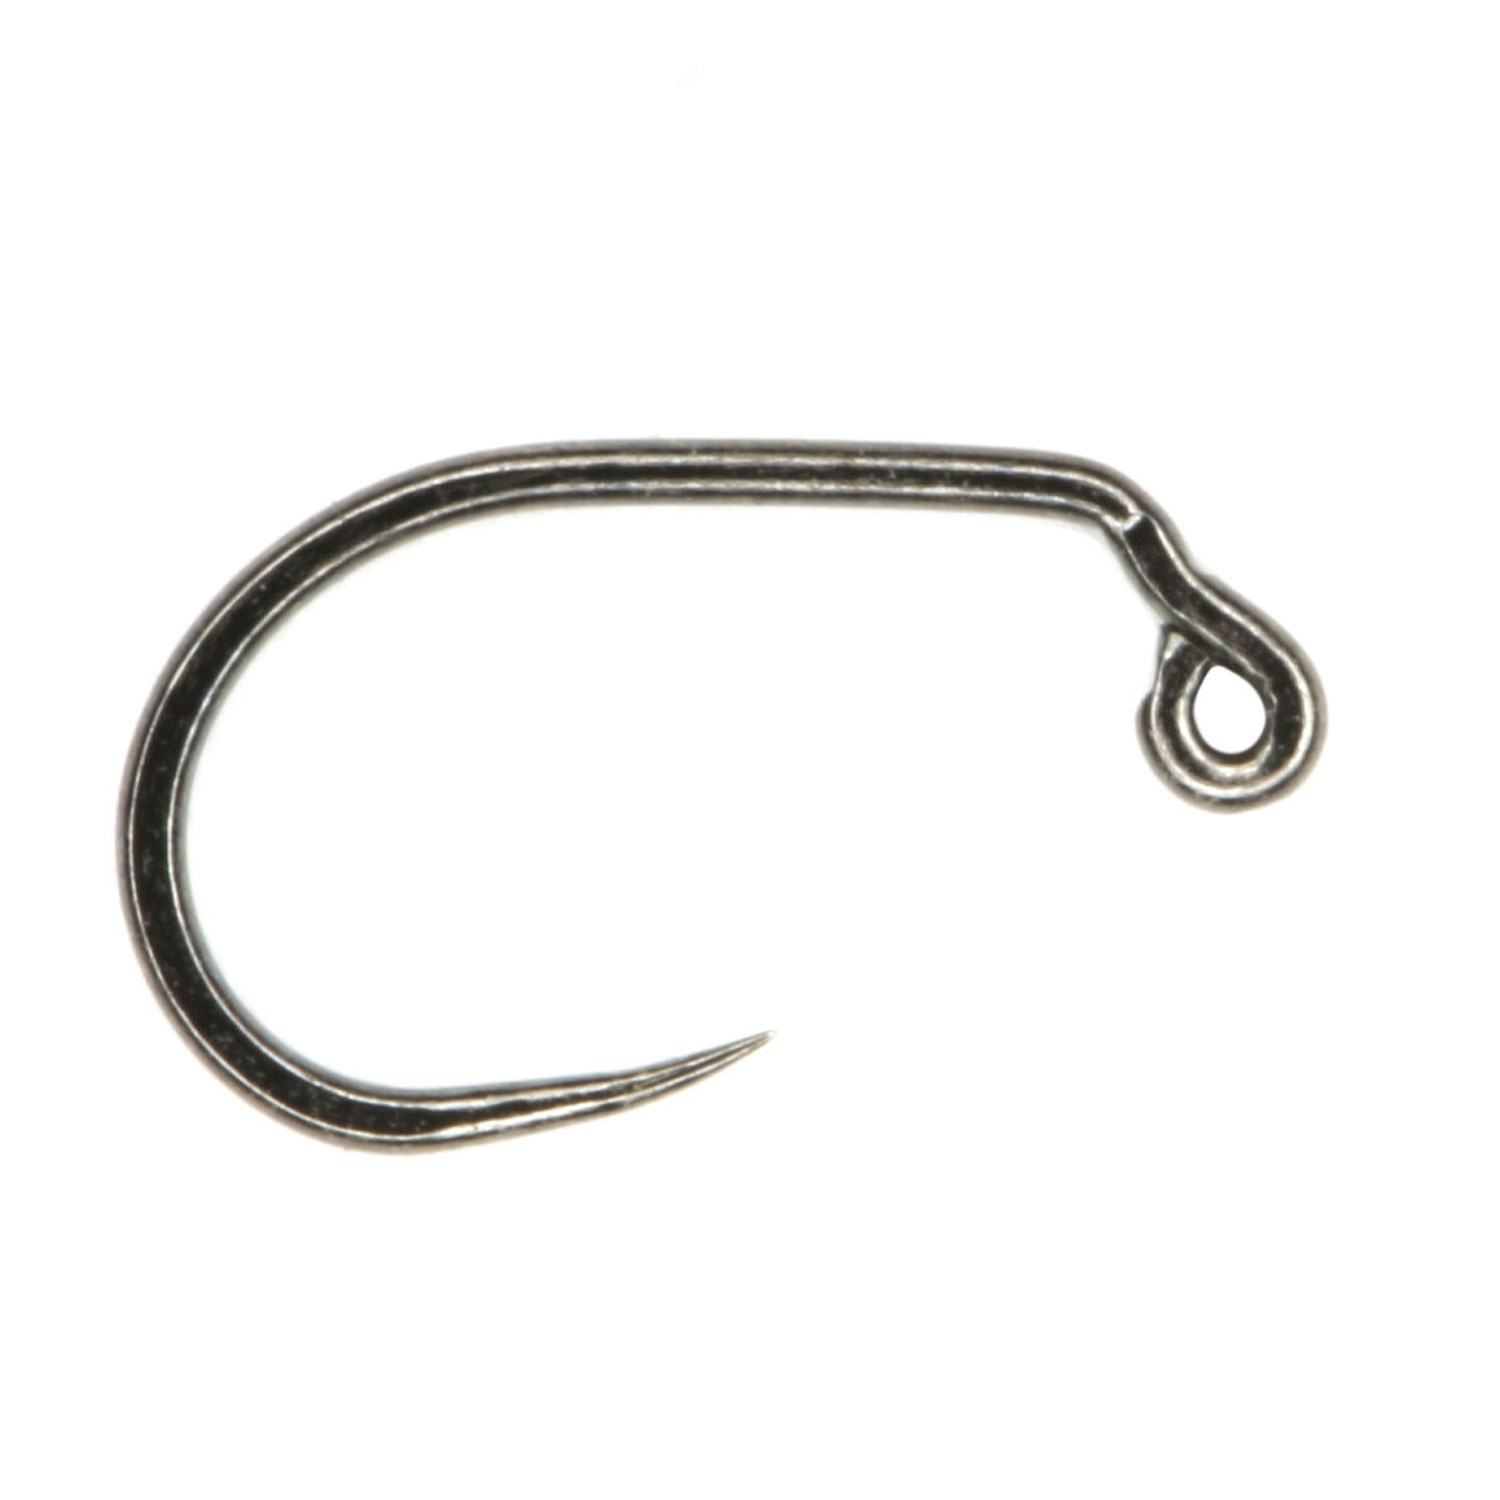 Sprite Hooks Barbless Wide Jig Black Nickel S2400 25-pack